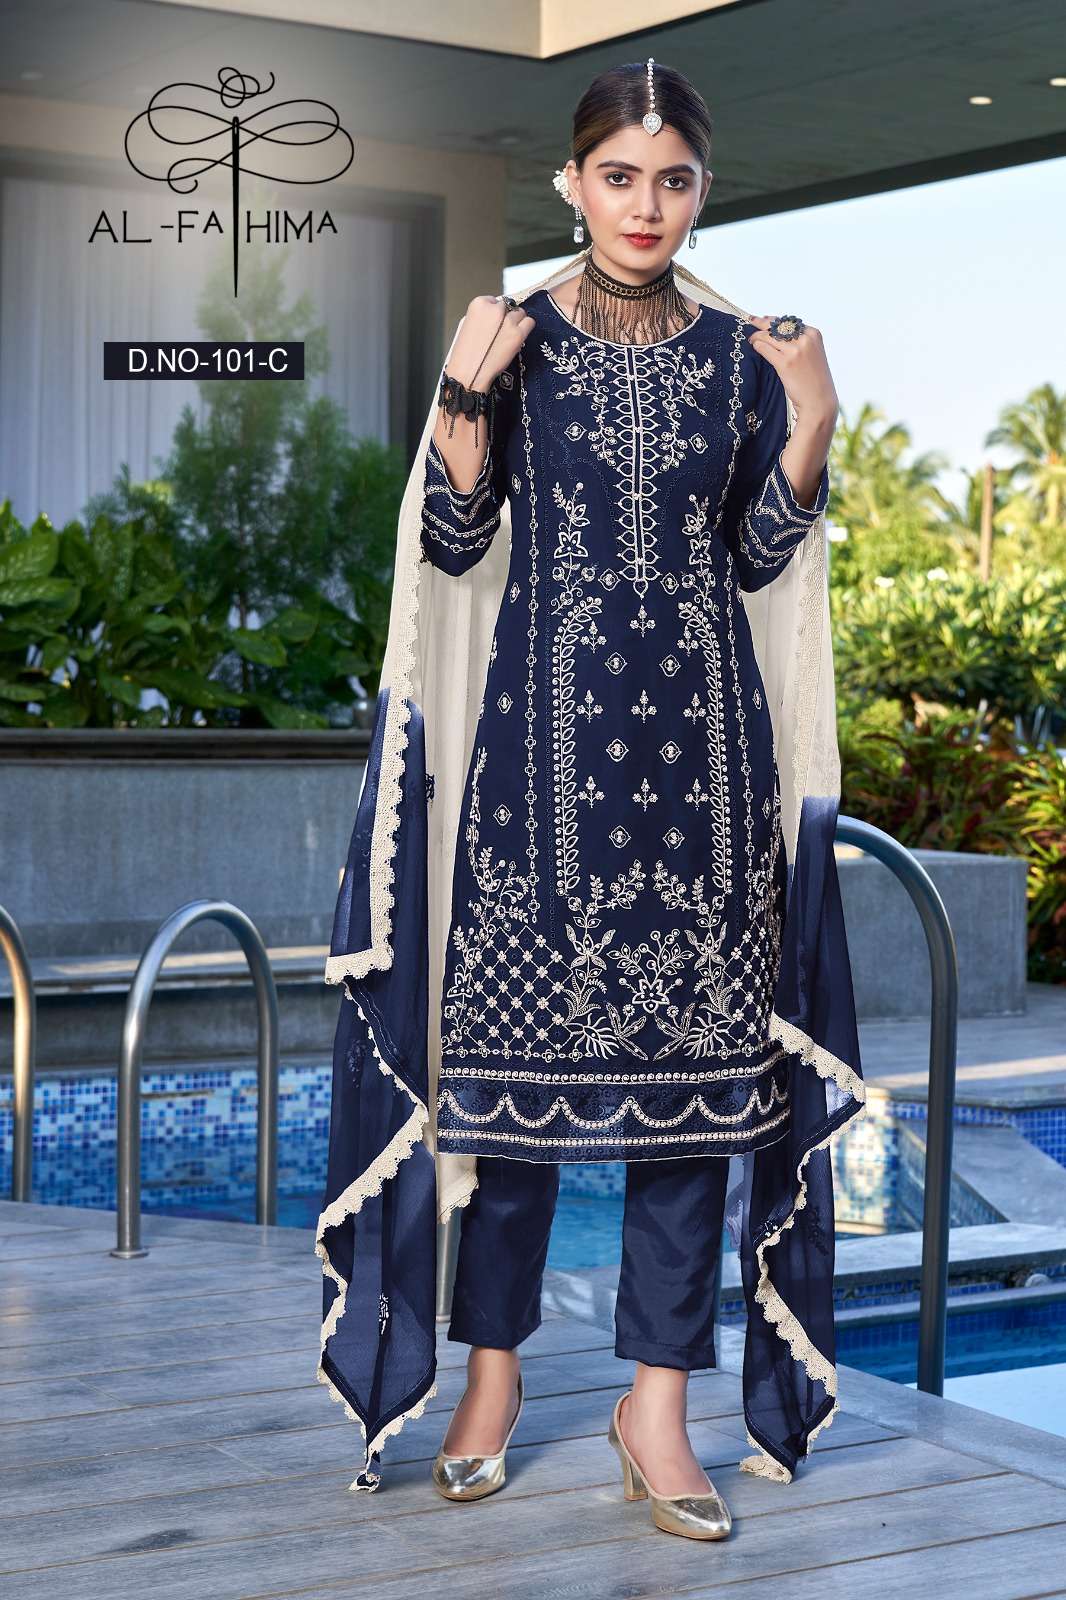 al fathima afreen no 101 georgatte innovative look salwar suit cataloug